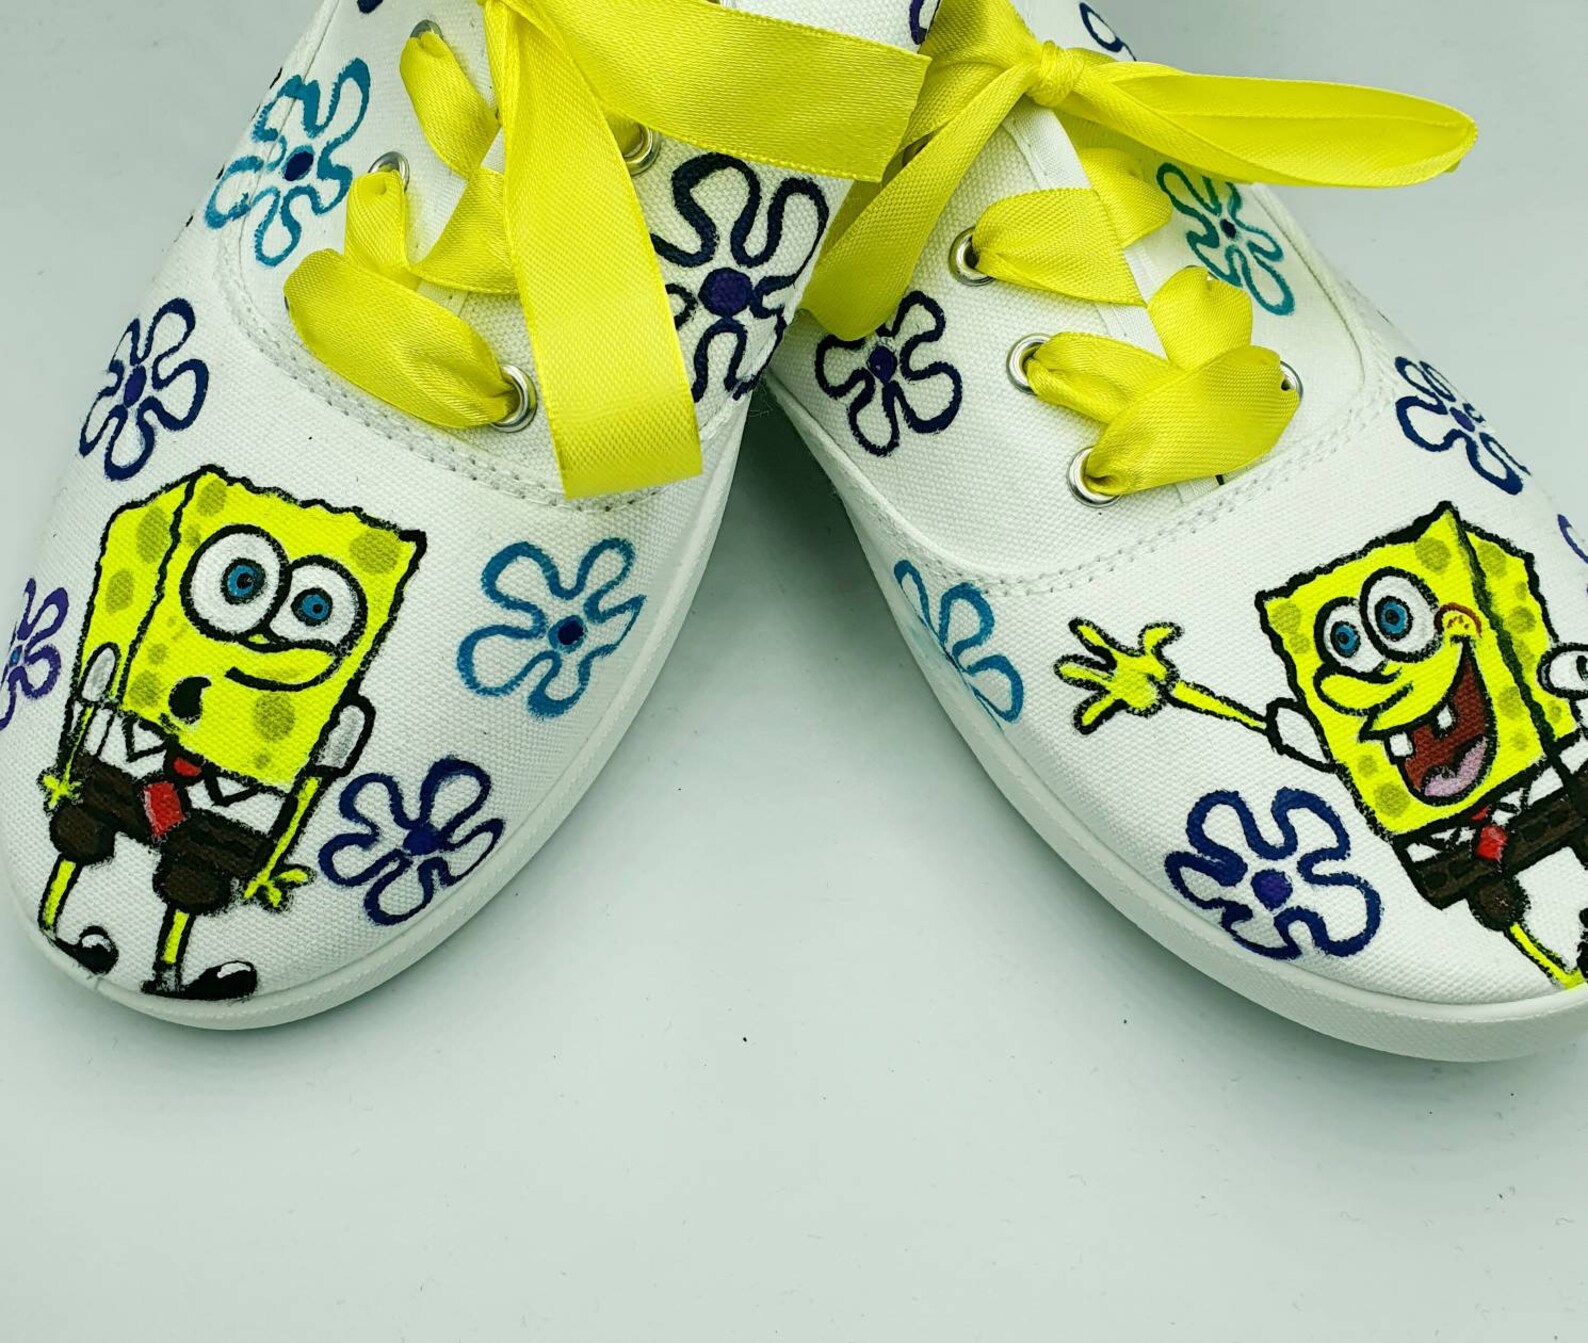 Spongebob hand painted tie sneakers painted Spongebob shoes | Etsy